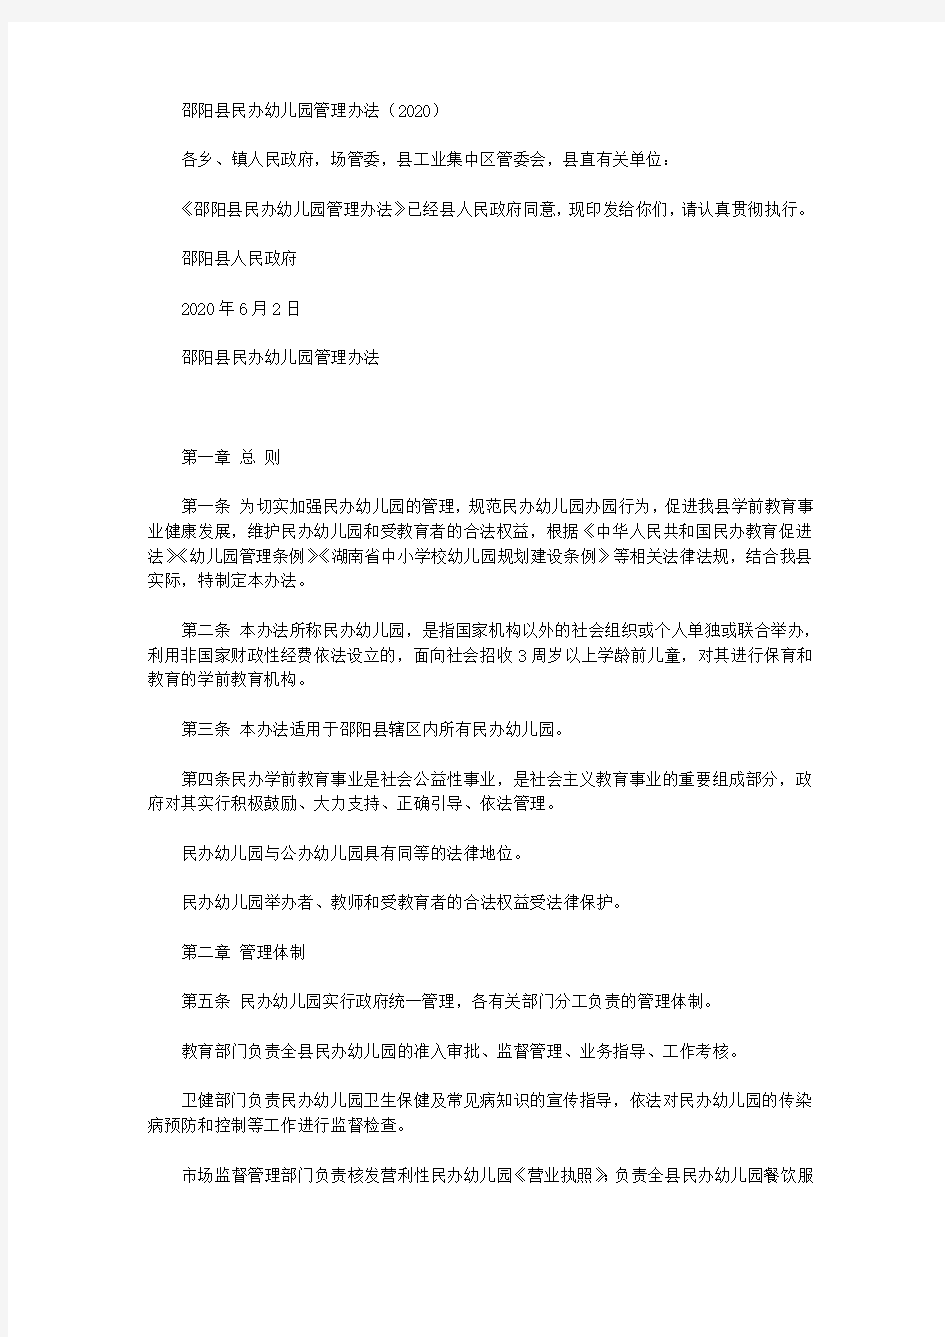 邵阳县民办幼儿园管理办法(2020)